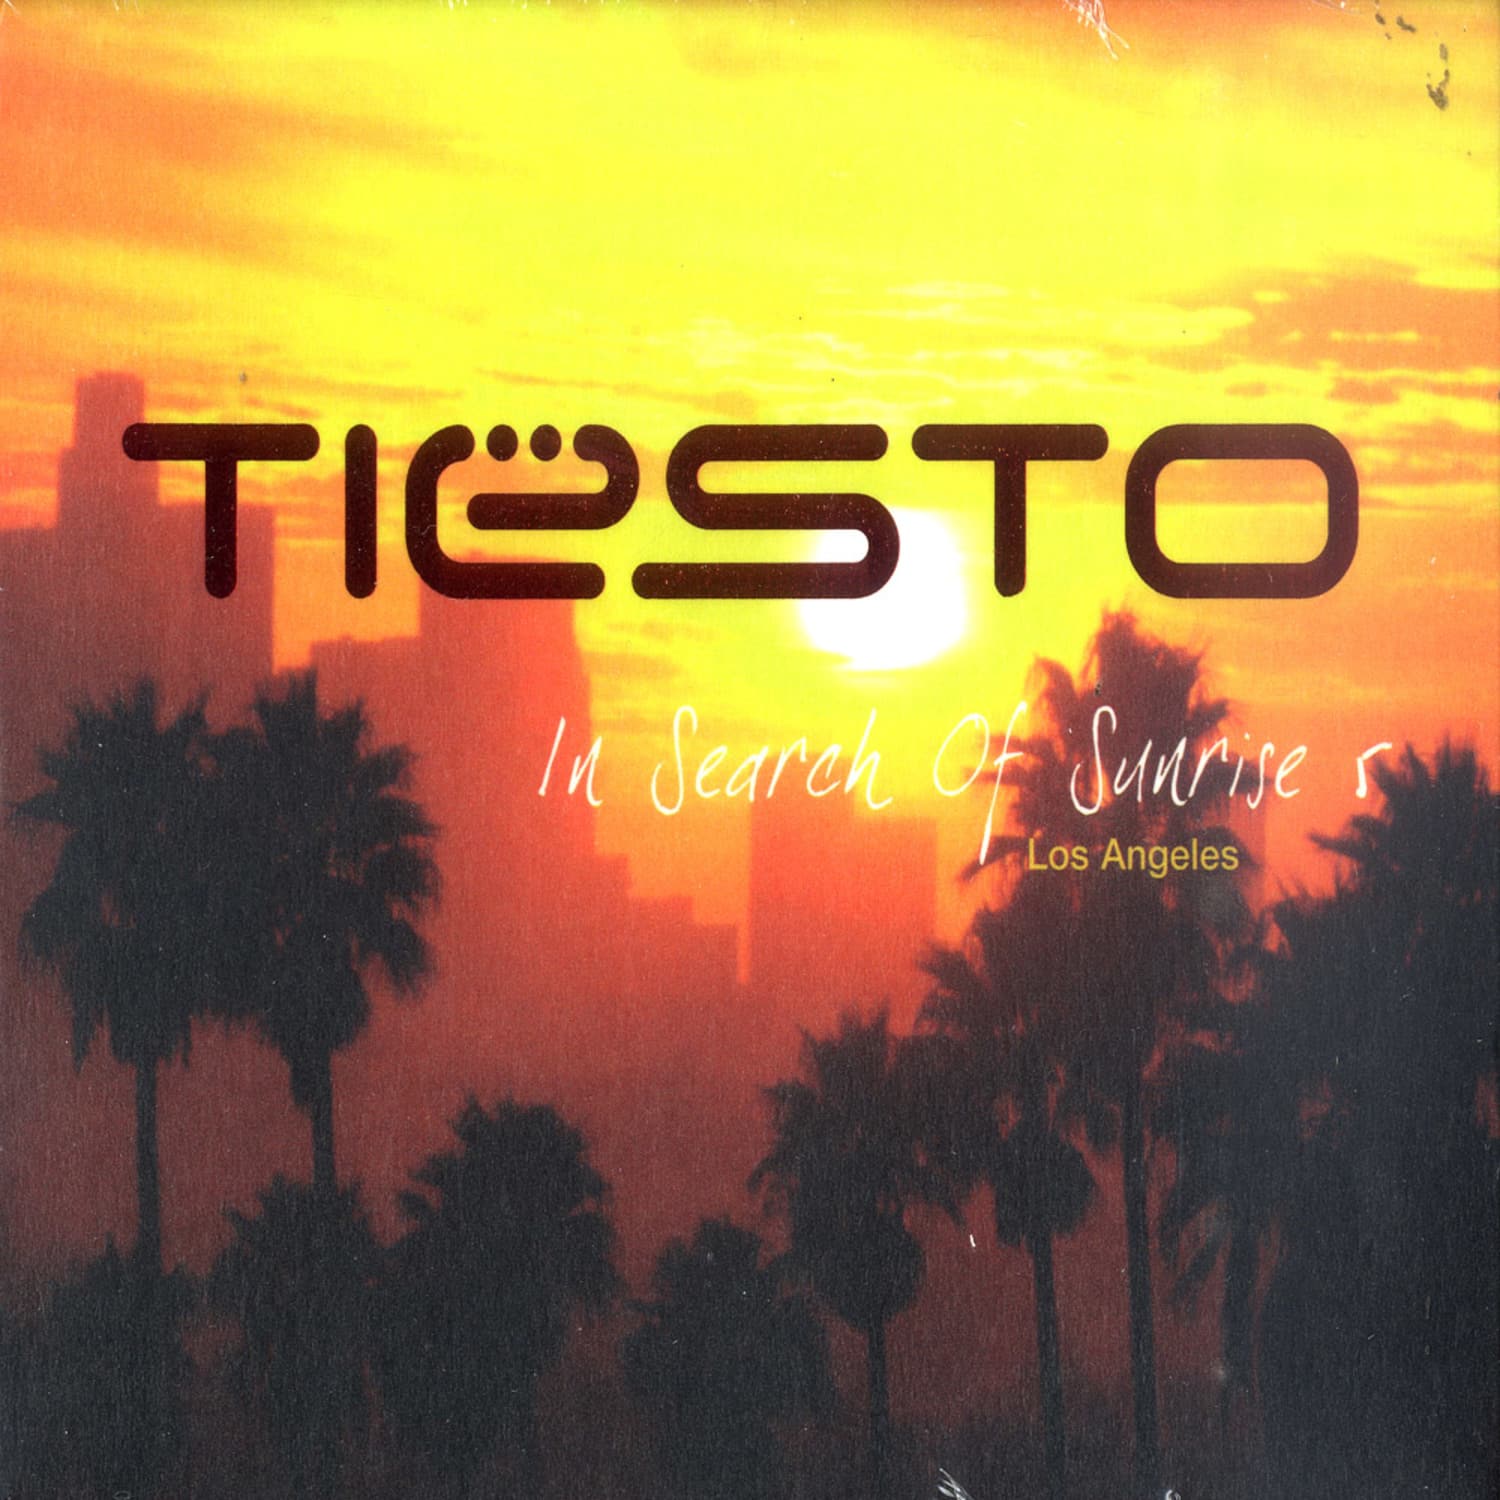 DJ Tiesto - IN SEARCH OF THE SUNRISE 5 LA 